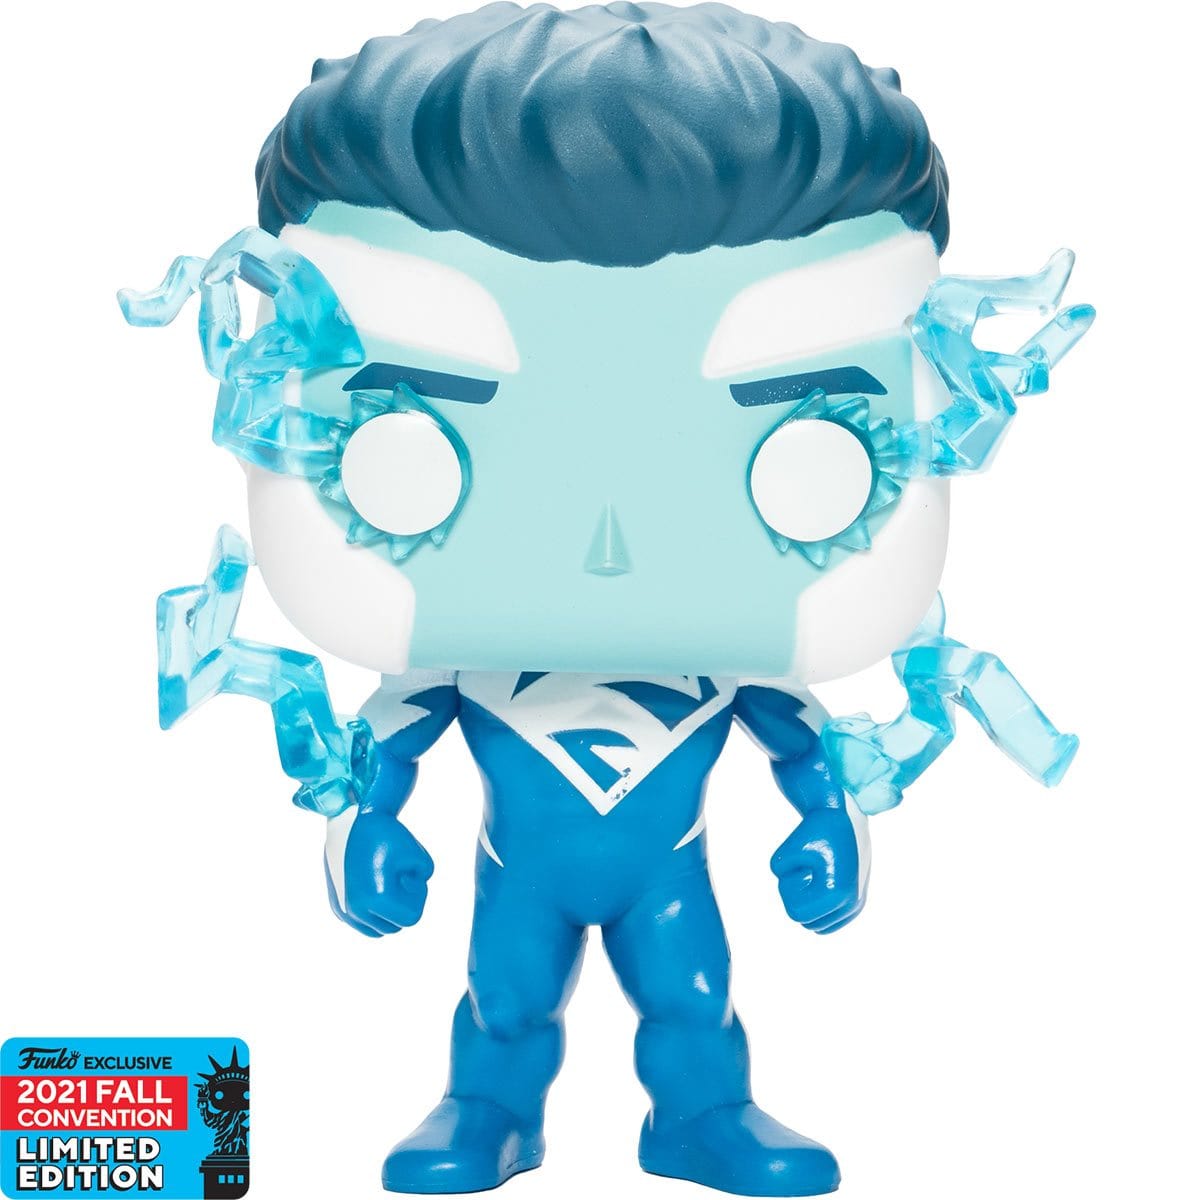 Superman Blue Pop! Vinyl Figure - 2021 Convention Exclusive